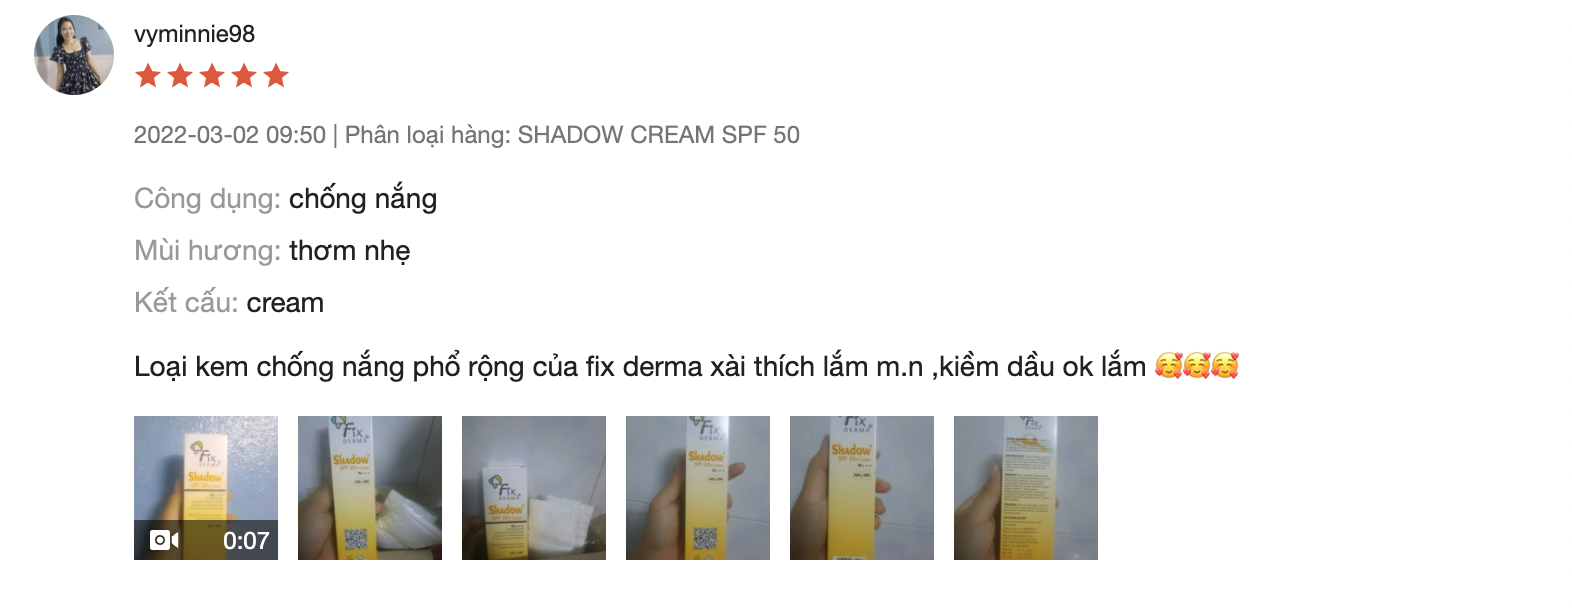 feedback của khác hàng về Kem chống nắng Fixderma Shadow